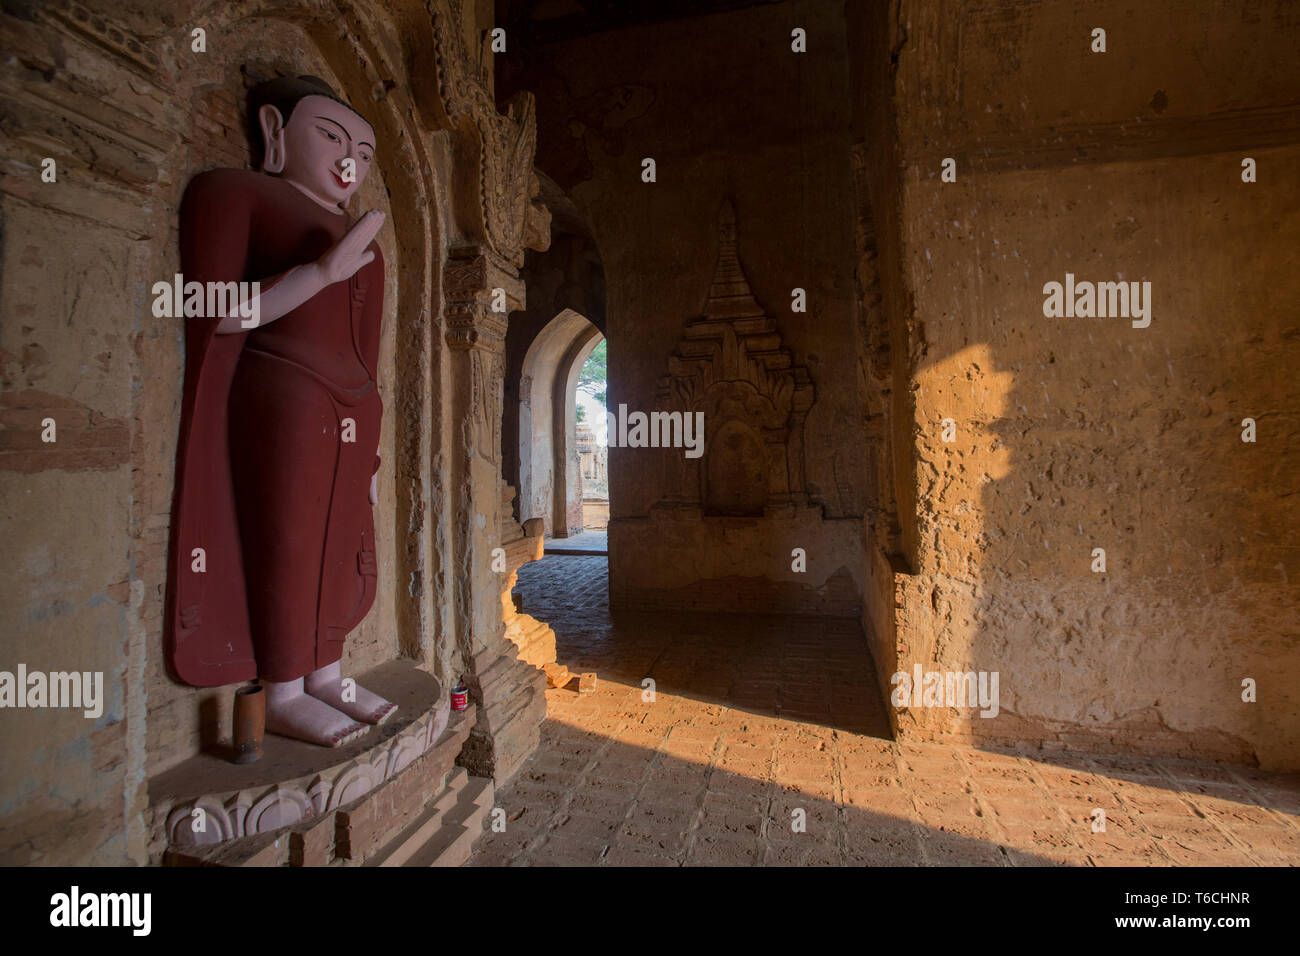 Une statue de Bouddha dans un stupa bouddhiste dans l'ancienne cité de Bagan au Myanmar. Banque D'Images